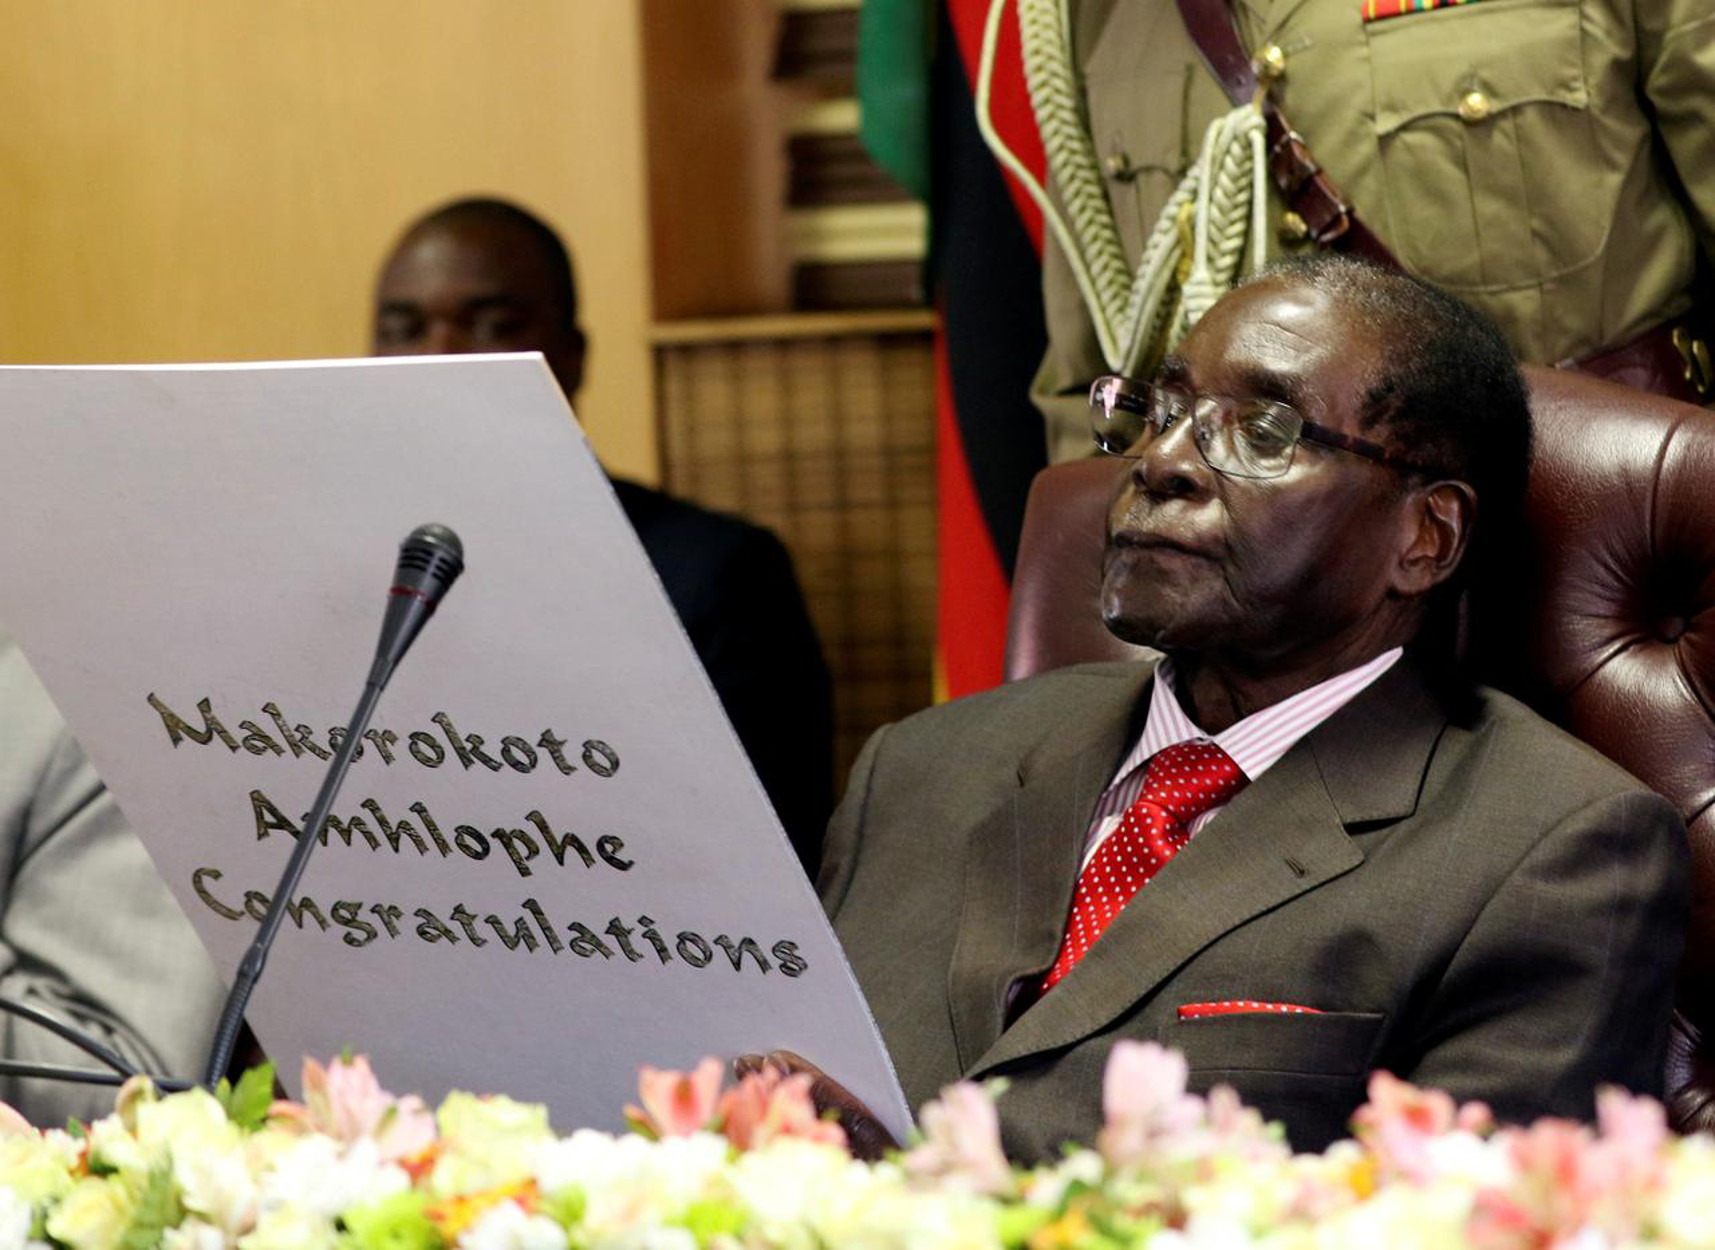 Ζιμπάμπουε: Ανακηρύχτηκε εθνικός ήρωας ο Μουγκάμπε – Σε πένθος η χώρα μέχρι την κηδεία του